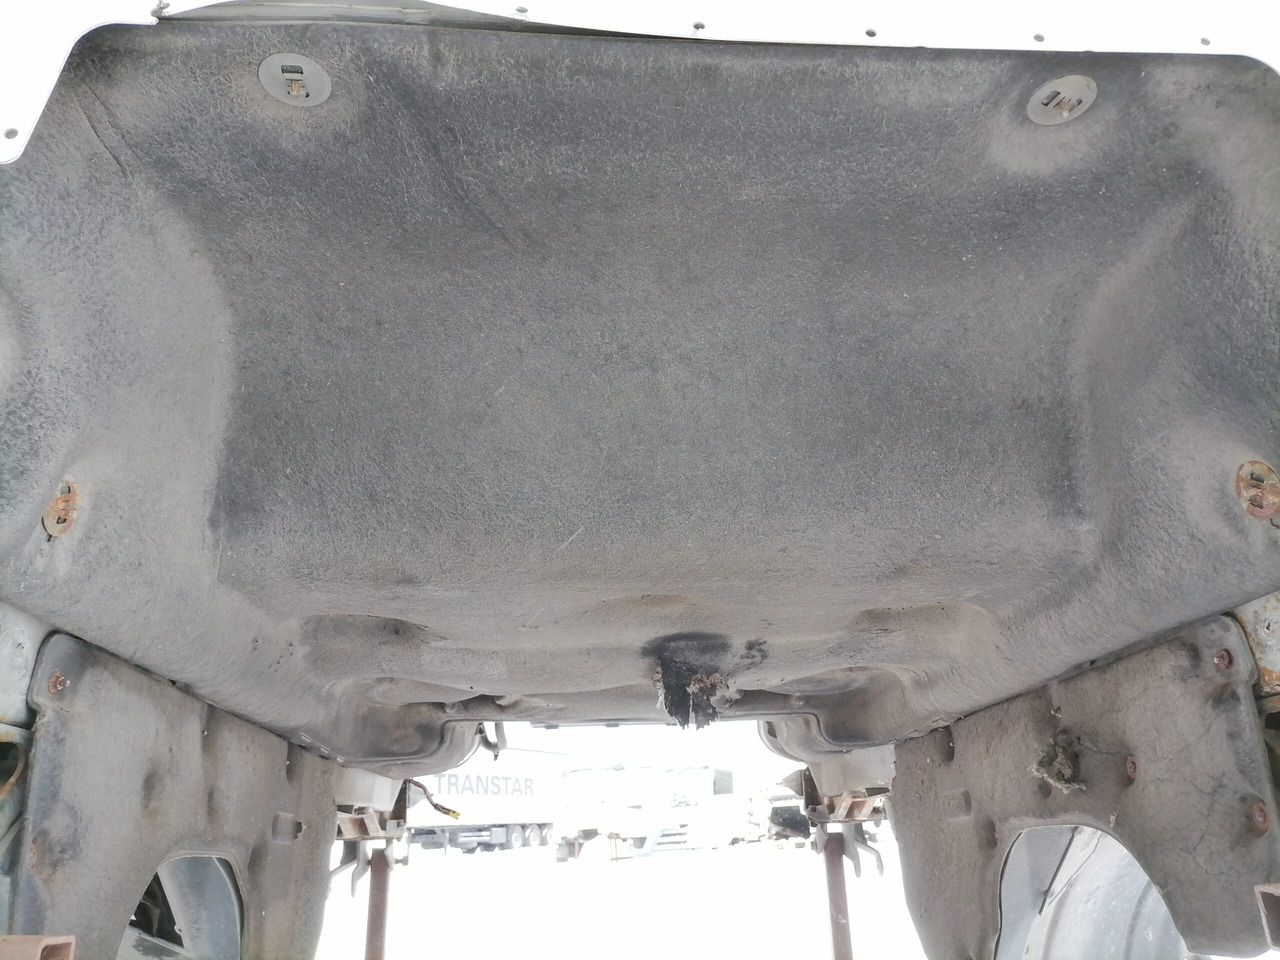 Cabina e interior para Camión MAN Cab TG460: foto 17